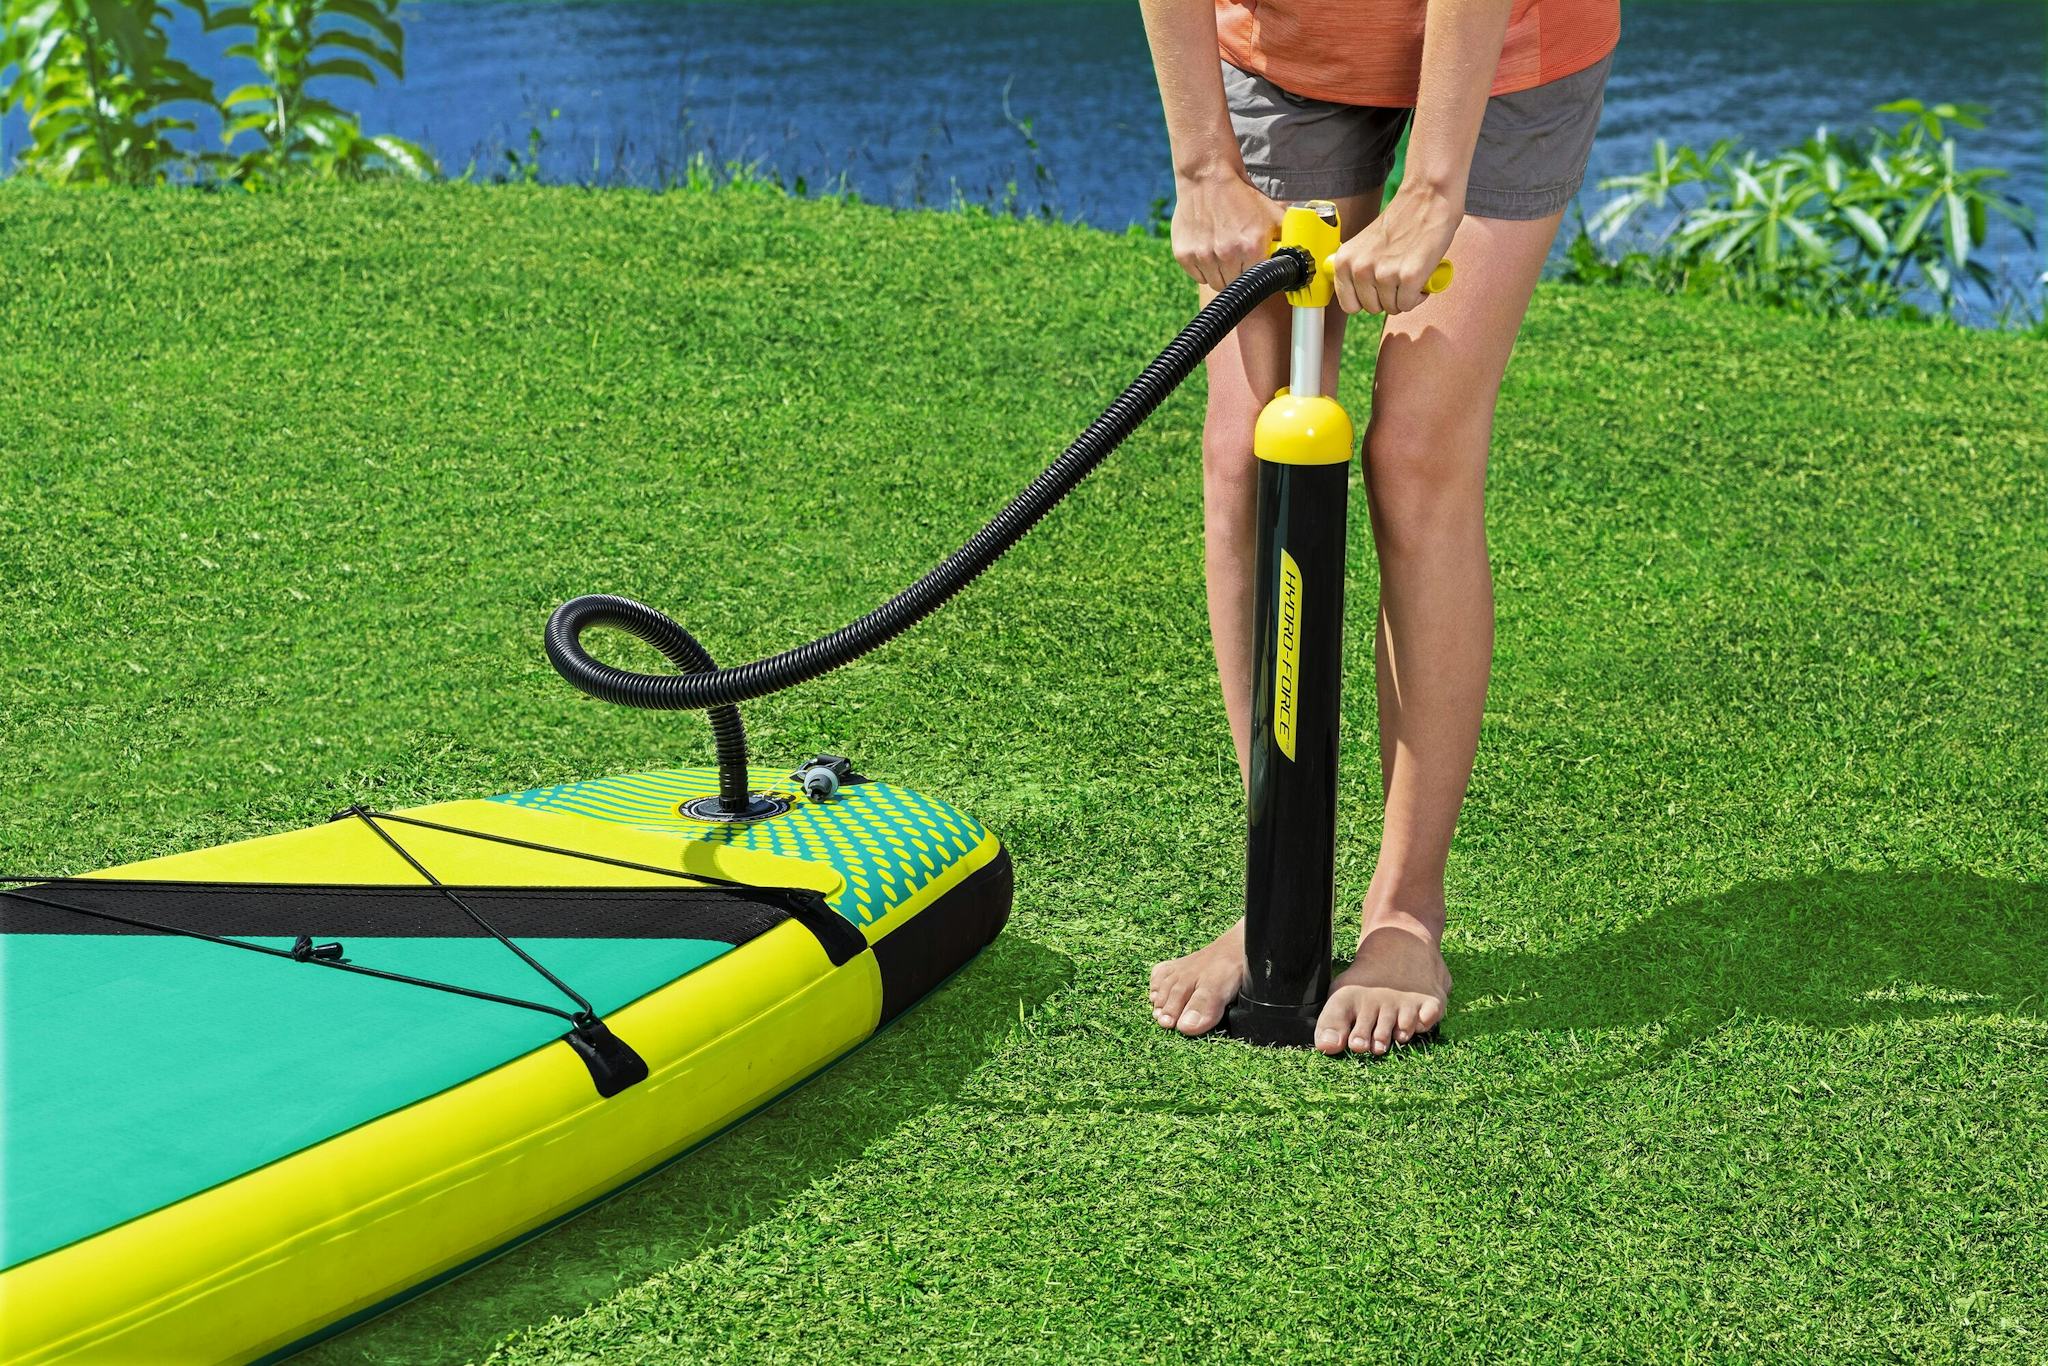 Sports d'eau Paddle SUP Freesoul Tech 340 x 89 x 15 cm transformable en kayak ou en planche à voile, avec siège, cale-pieds, pompe Bestway 8